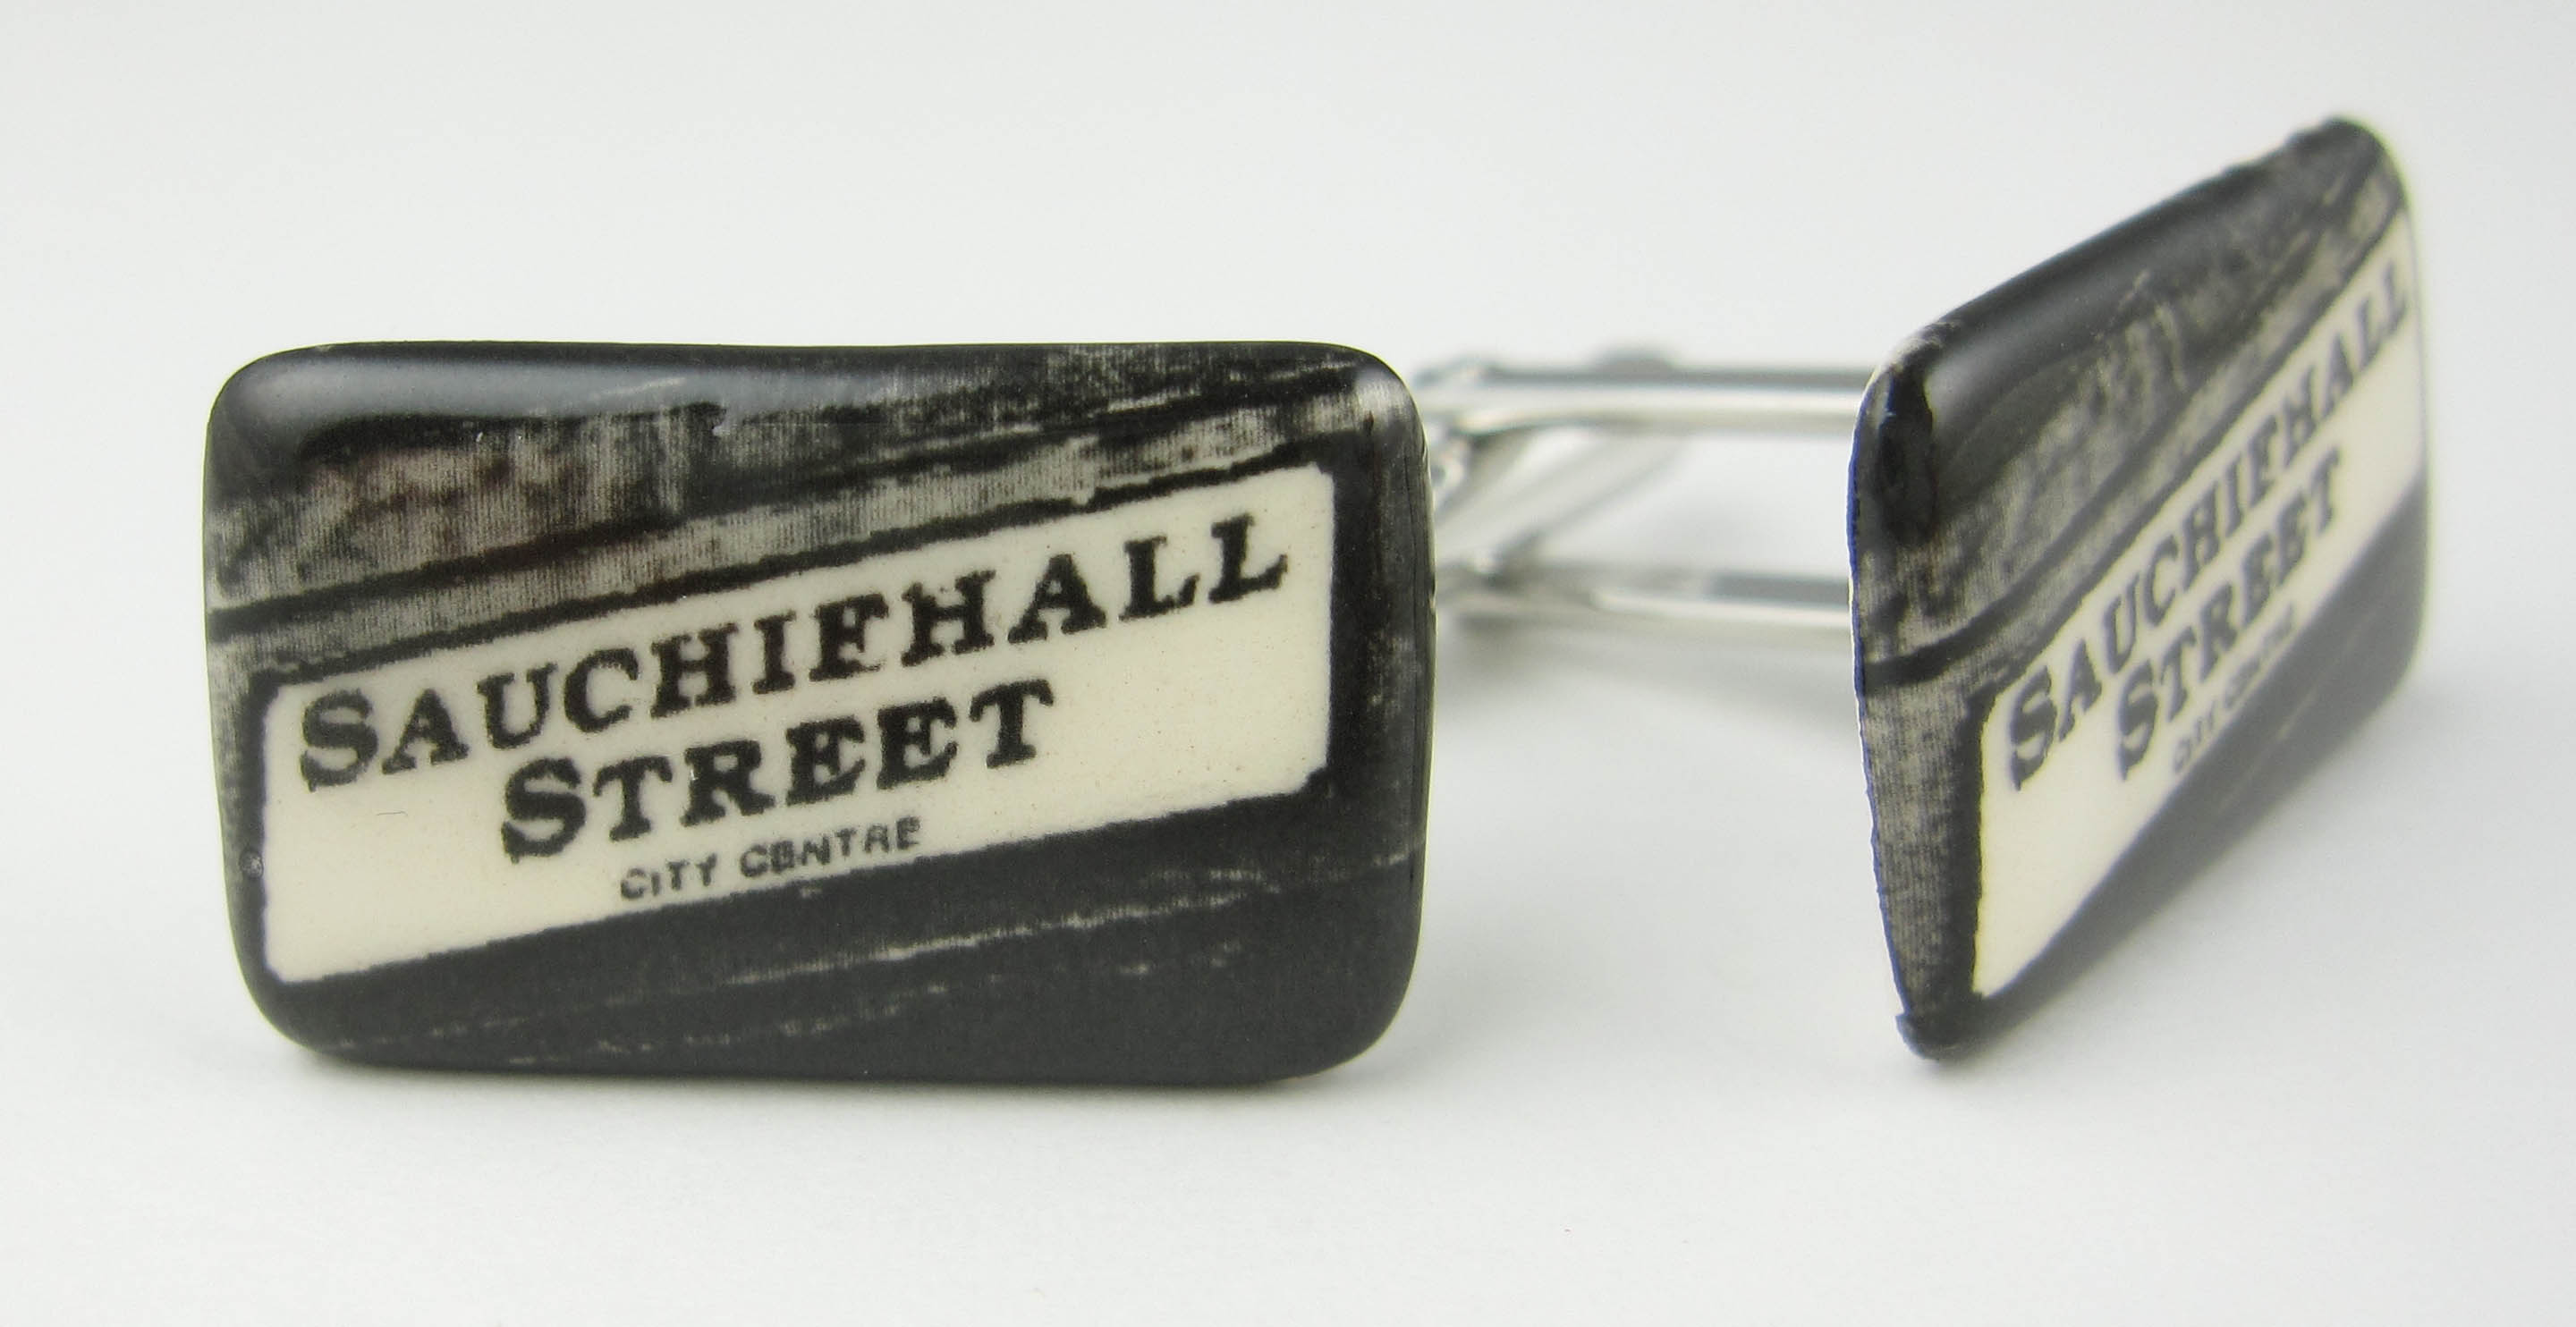 Sauchiehall Street cufflinks